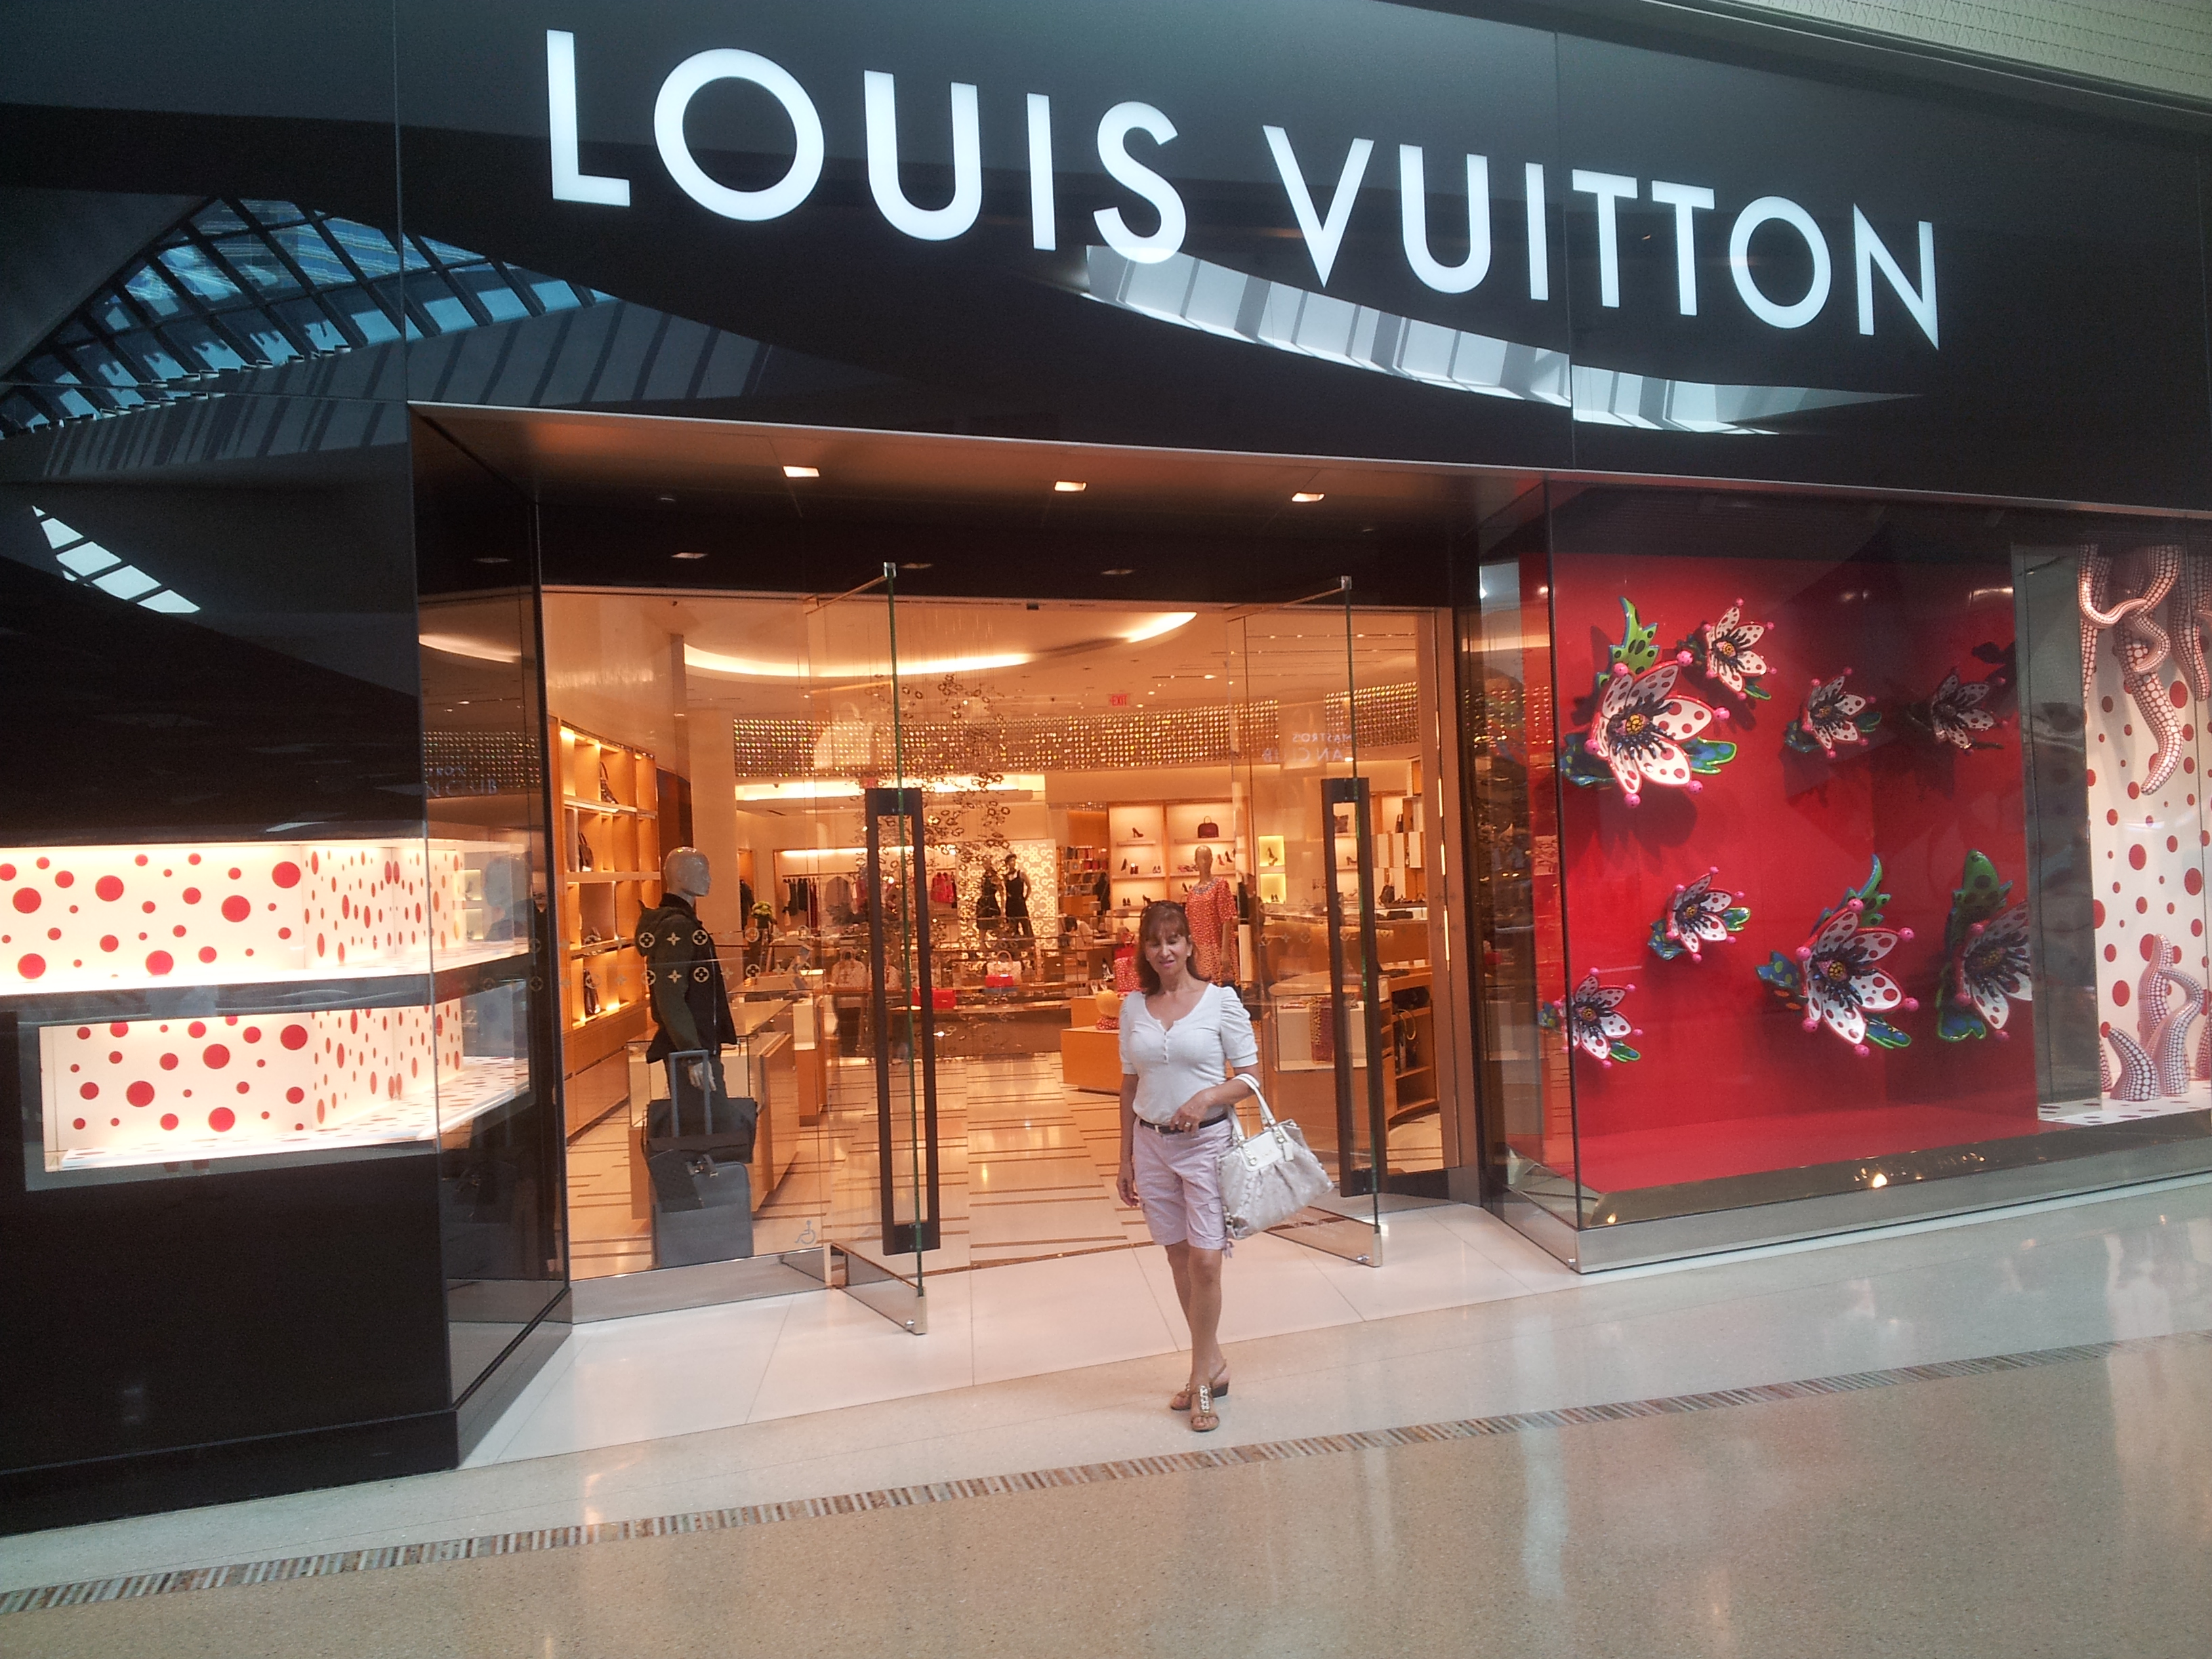 Louis Vuitton Galleria Fort Lauderdale Florida Flag